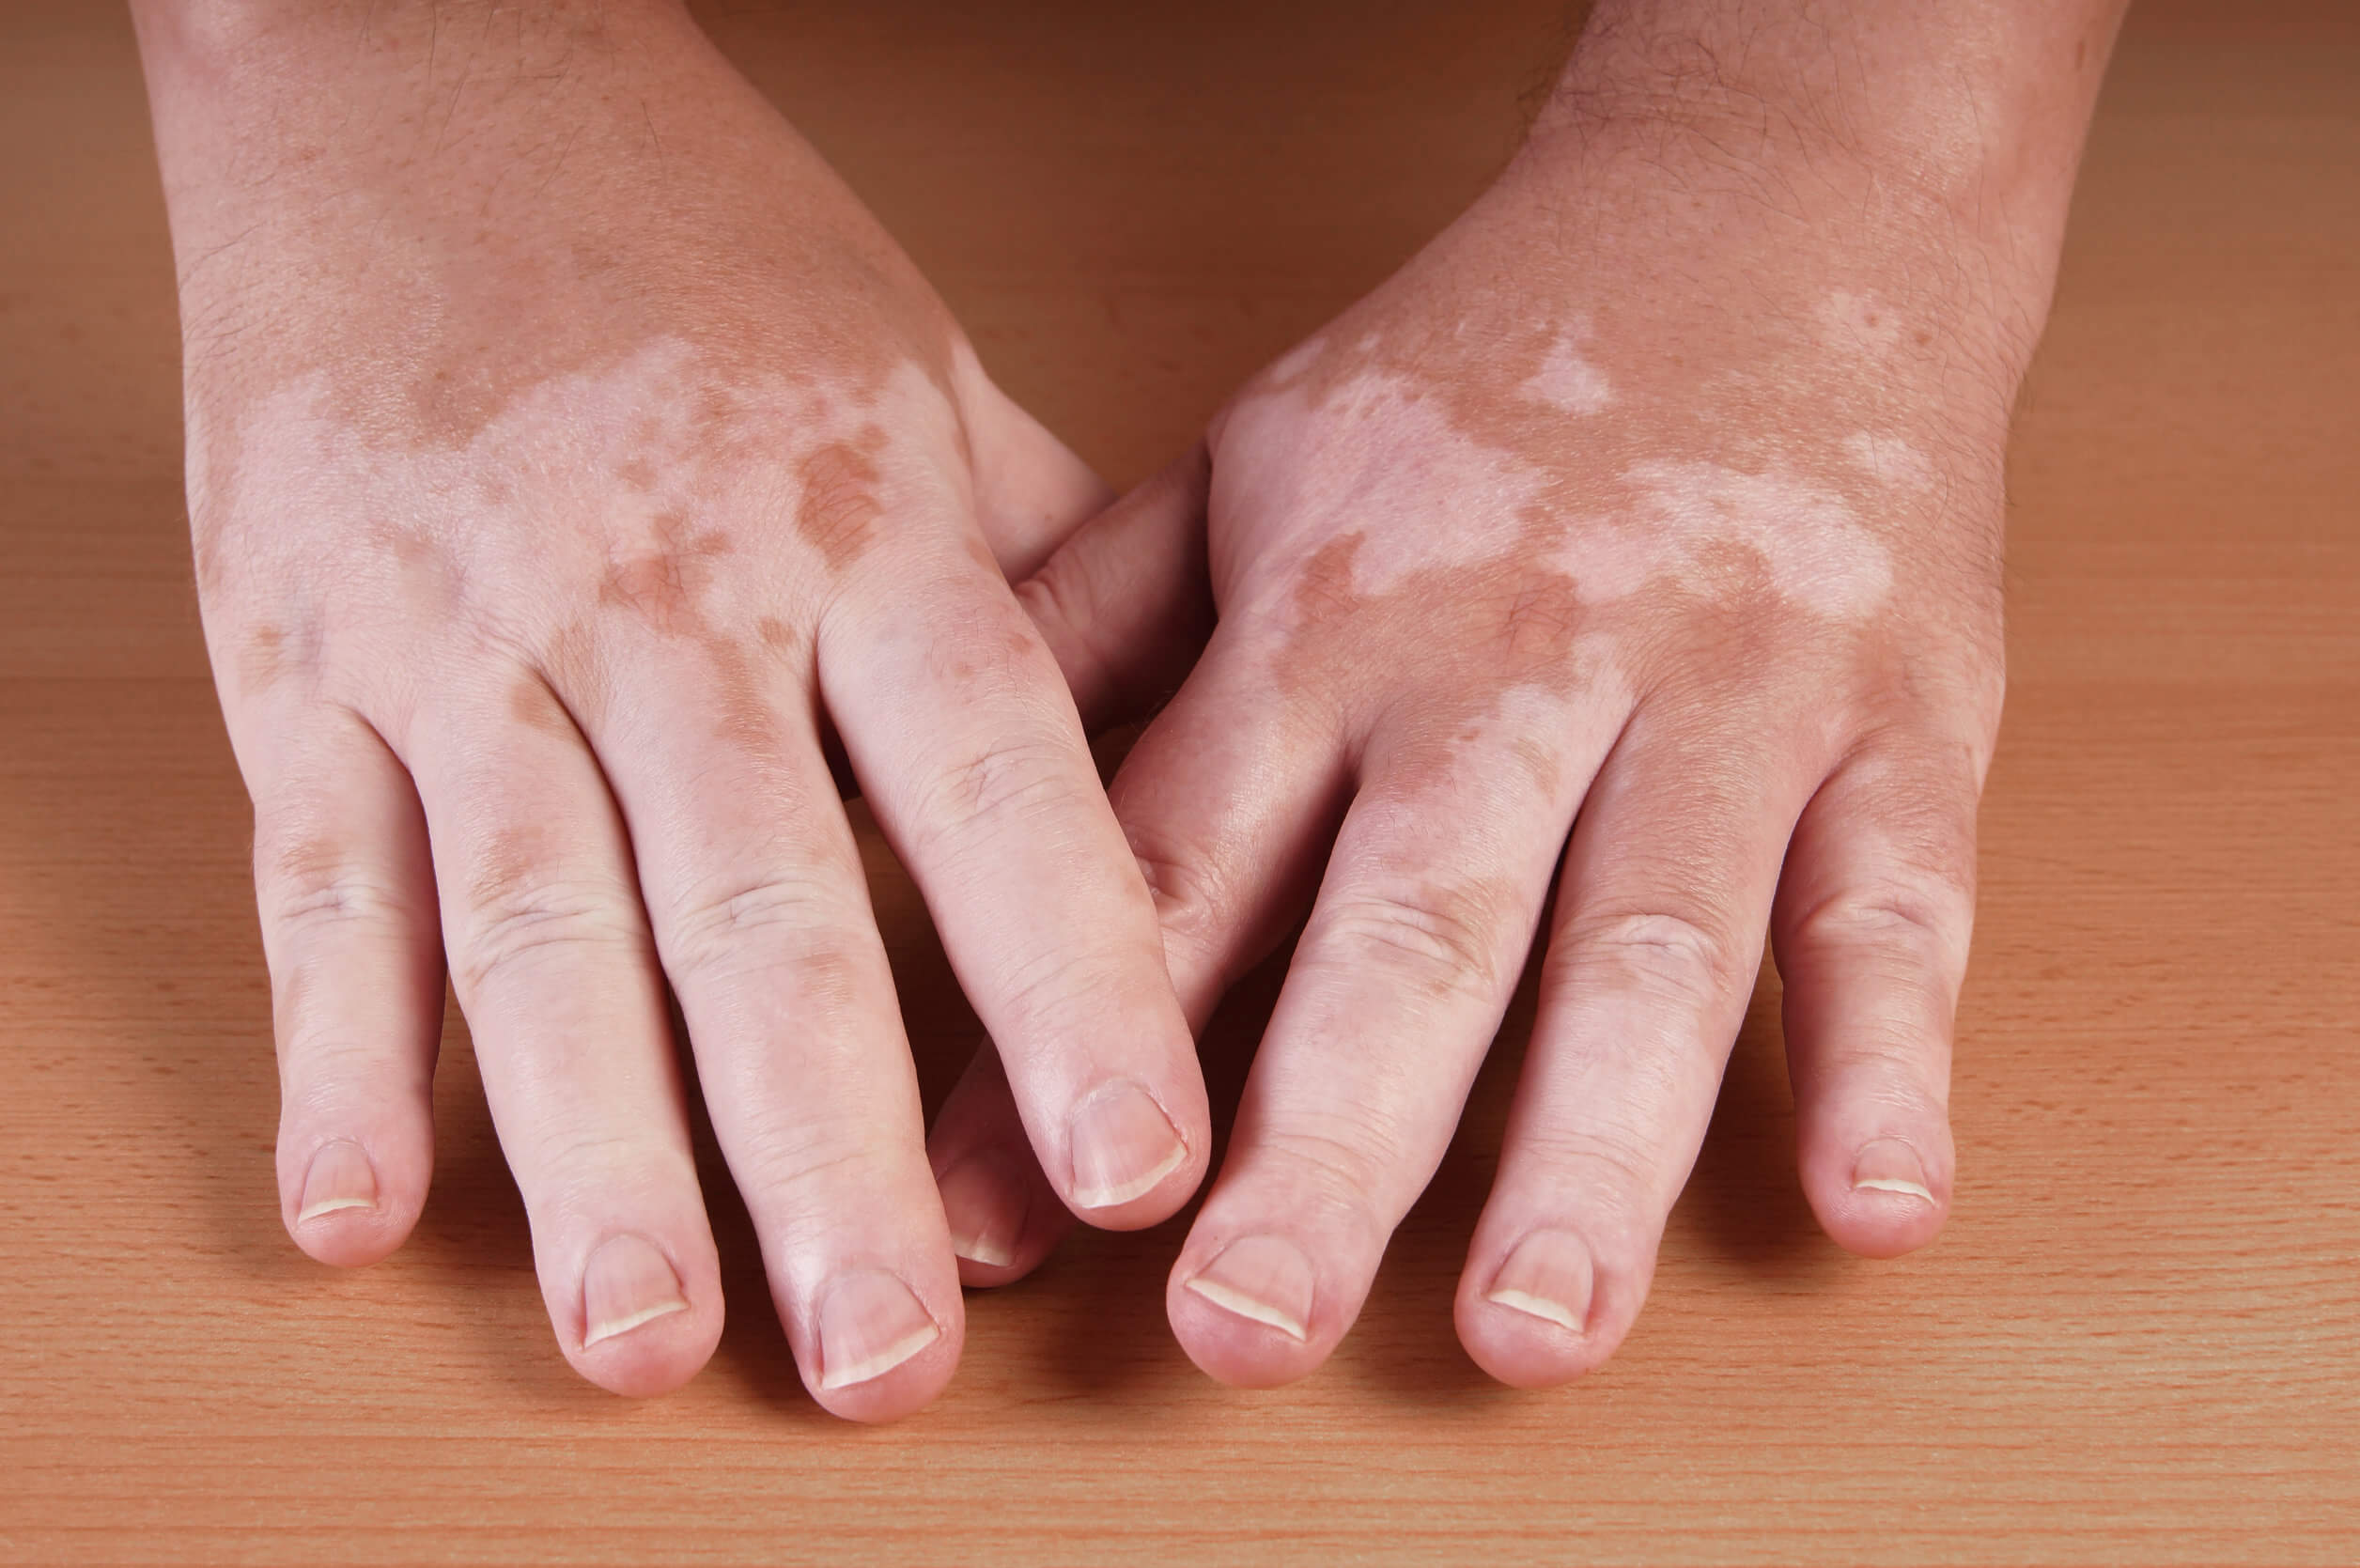 The symptoms of vitiligo are spots